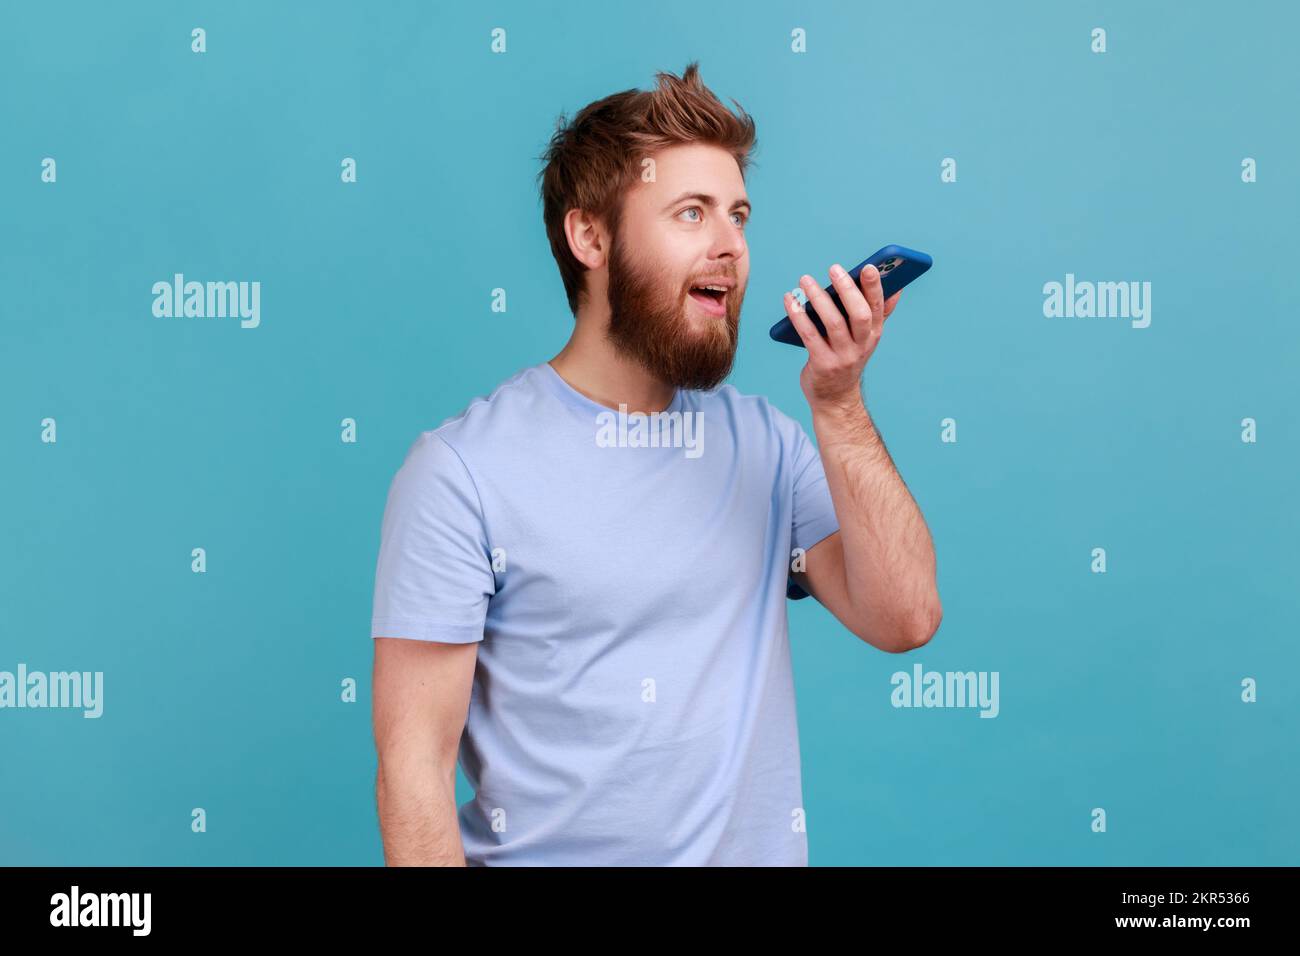 Ritratto di un uomo ottimista che registra un messaggio vocale o parla con un assistente online sul suo smartphone tenendo il telefono vicino alla bocca. Studio in interni isolato su sfondo blu. Foto Stock